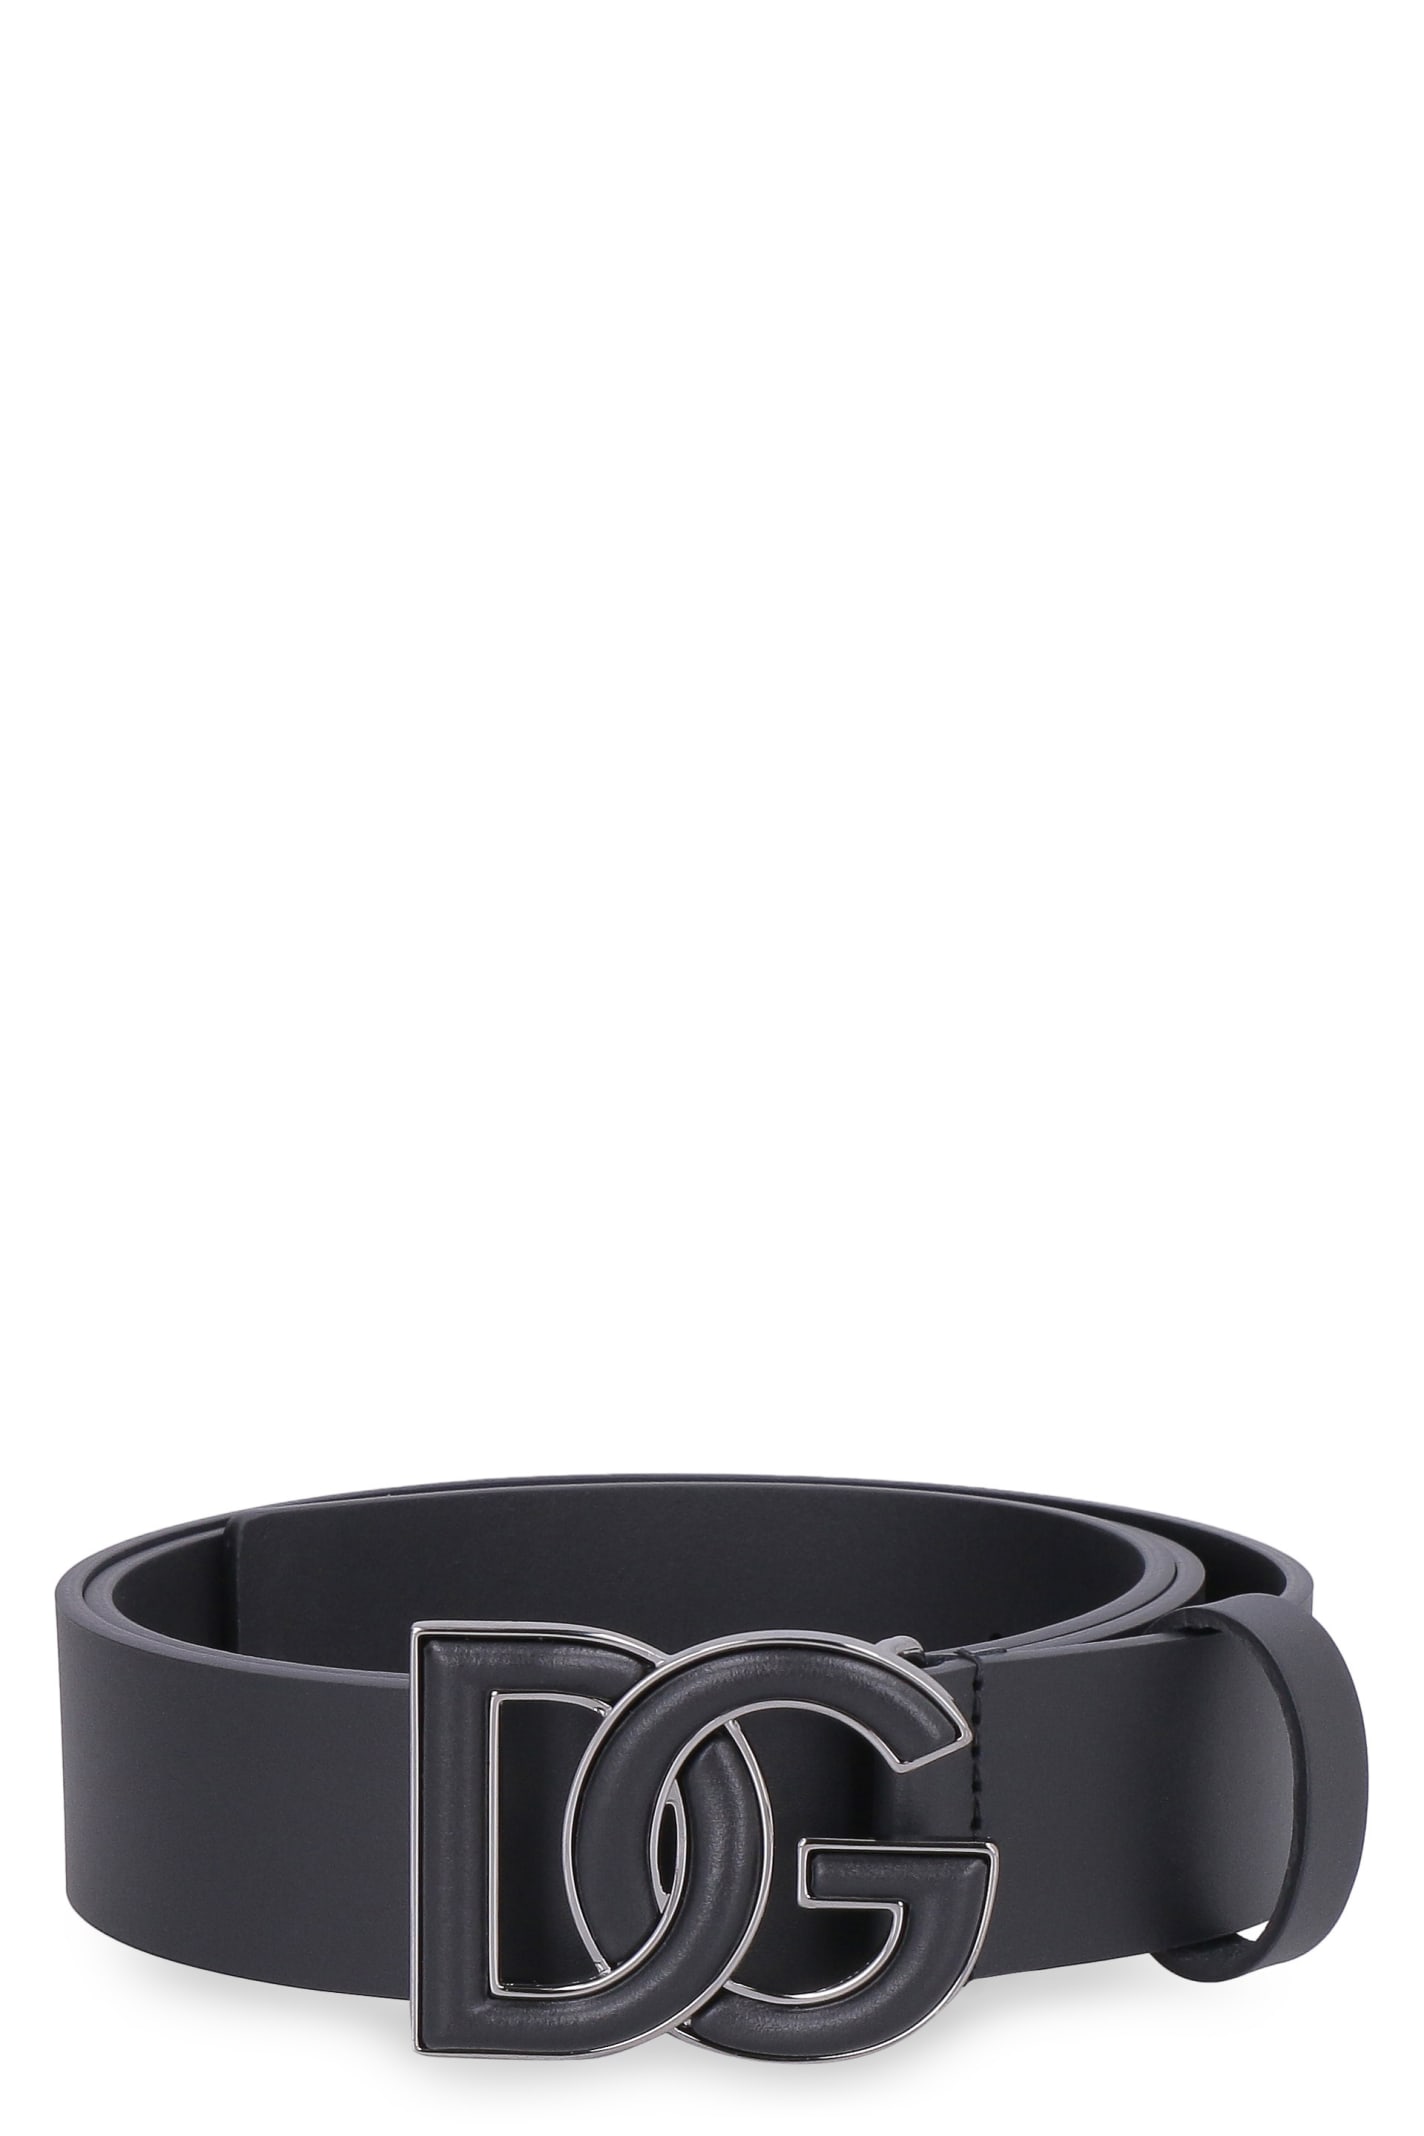 Dolce & Gabbana Dg Buckle Leather Belt